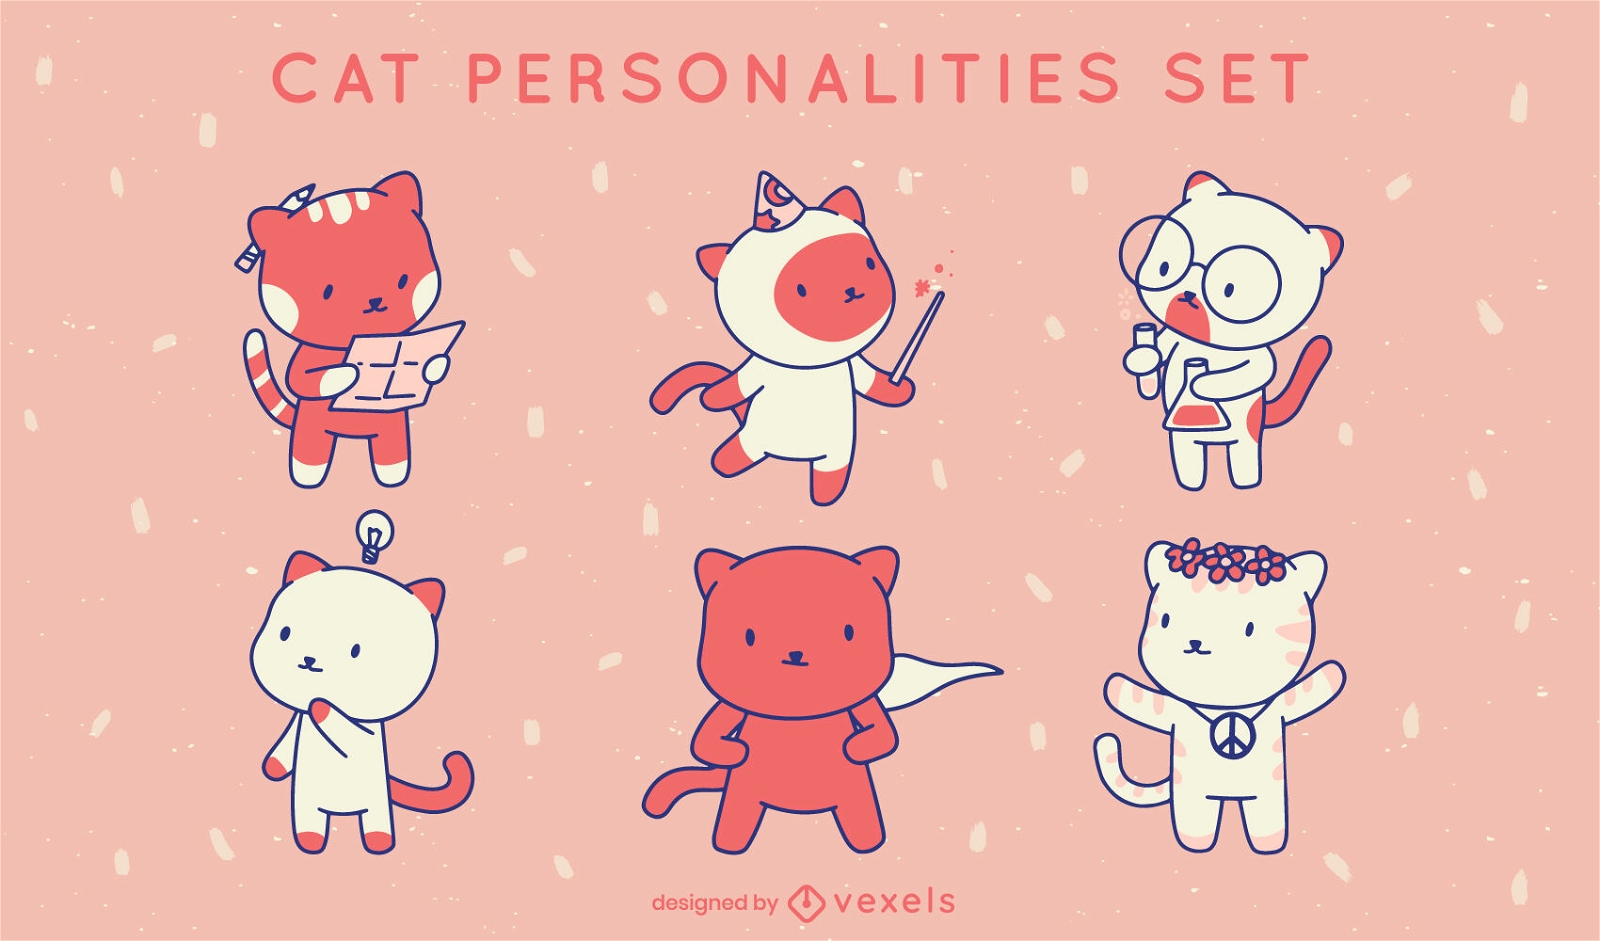 Zeichensatz für Katzenpersönlichkeiten